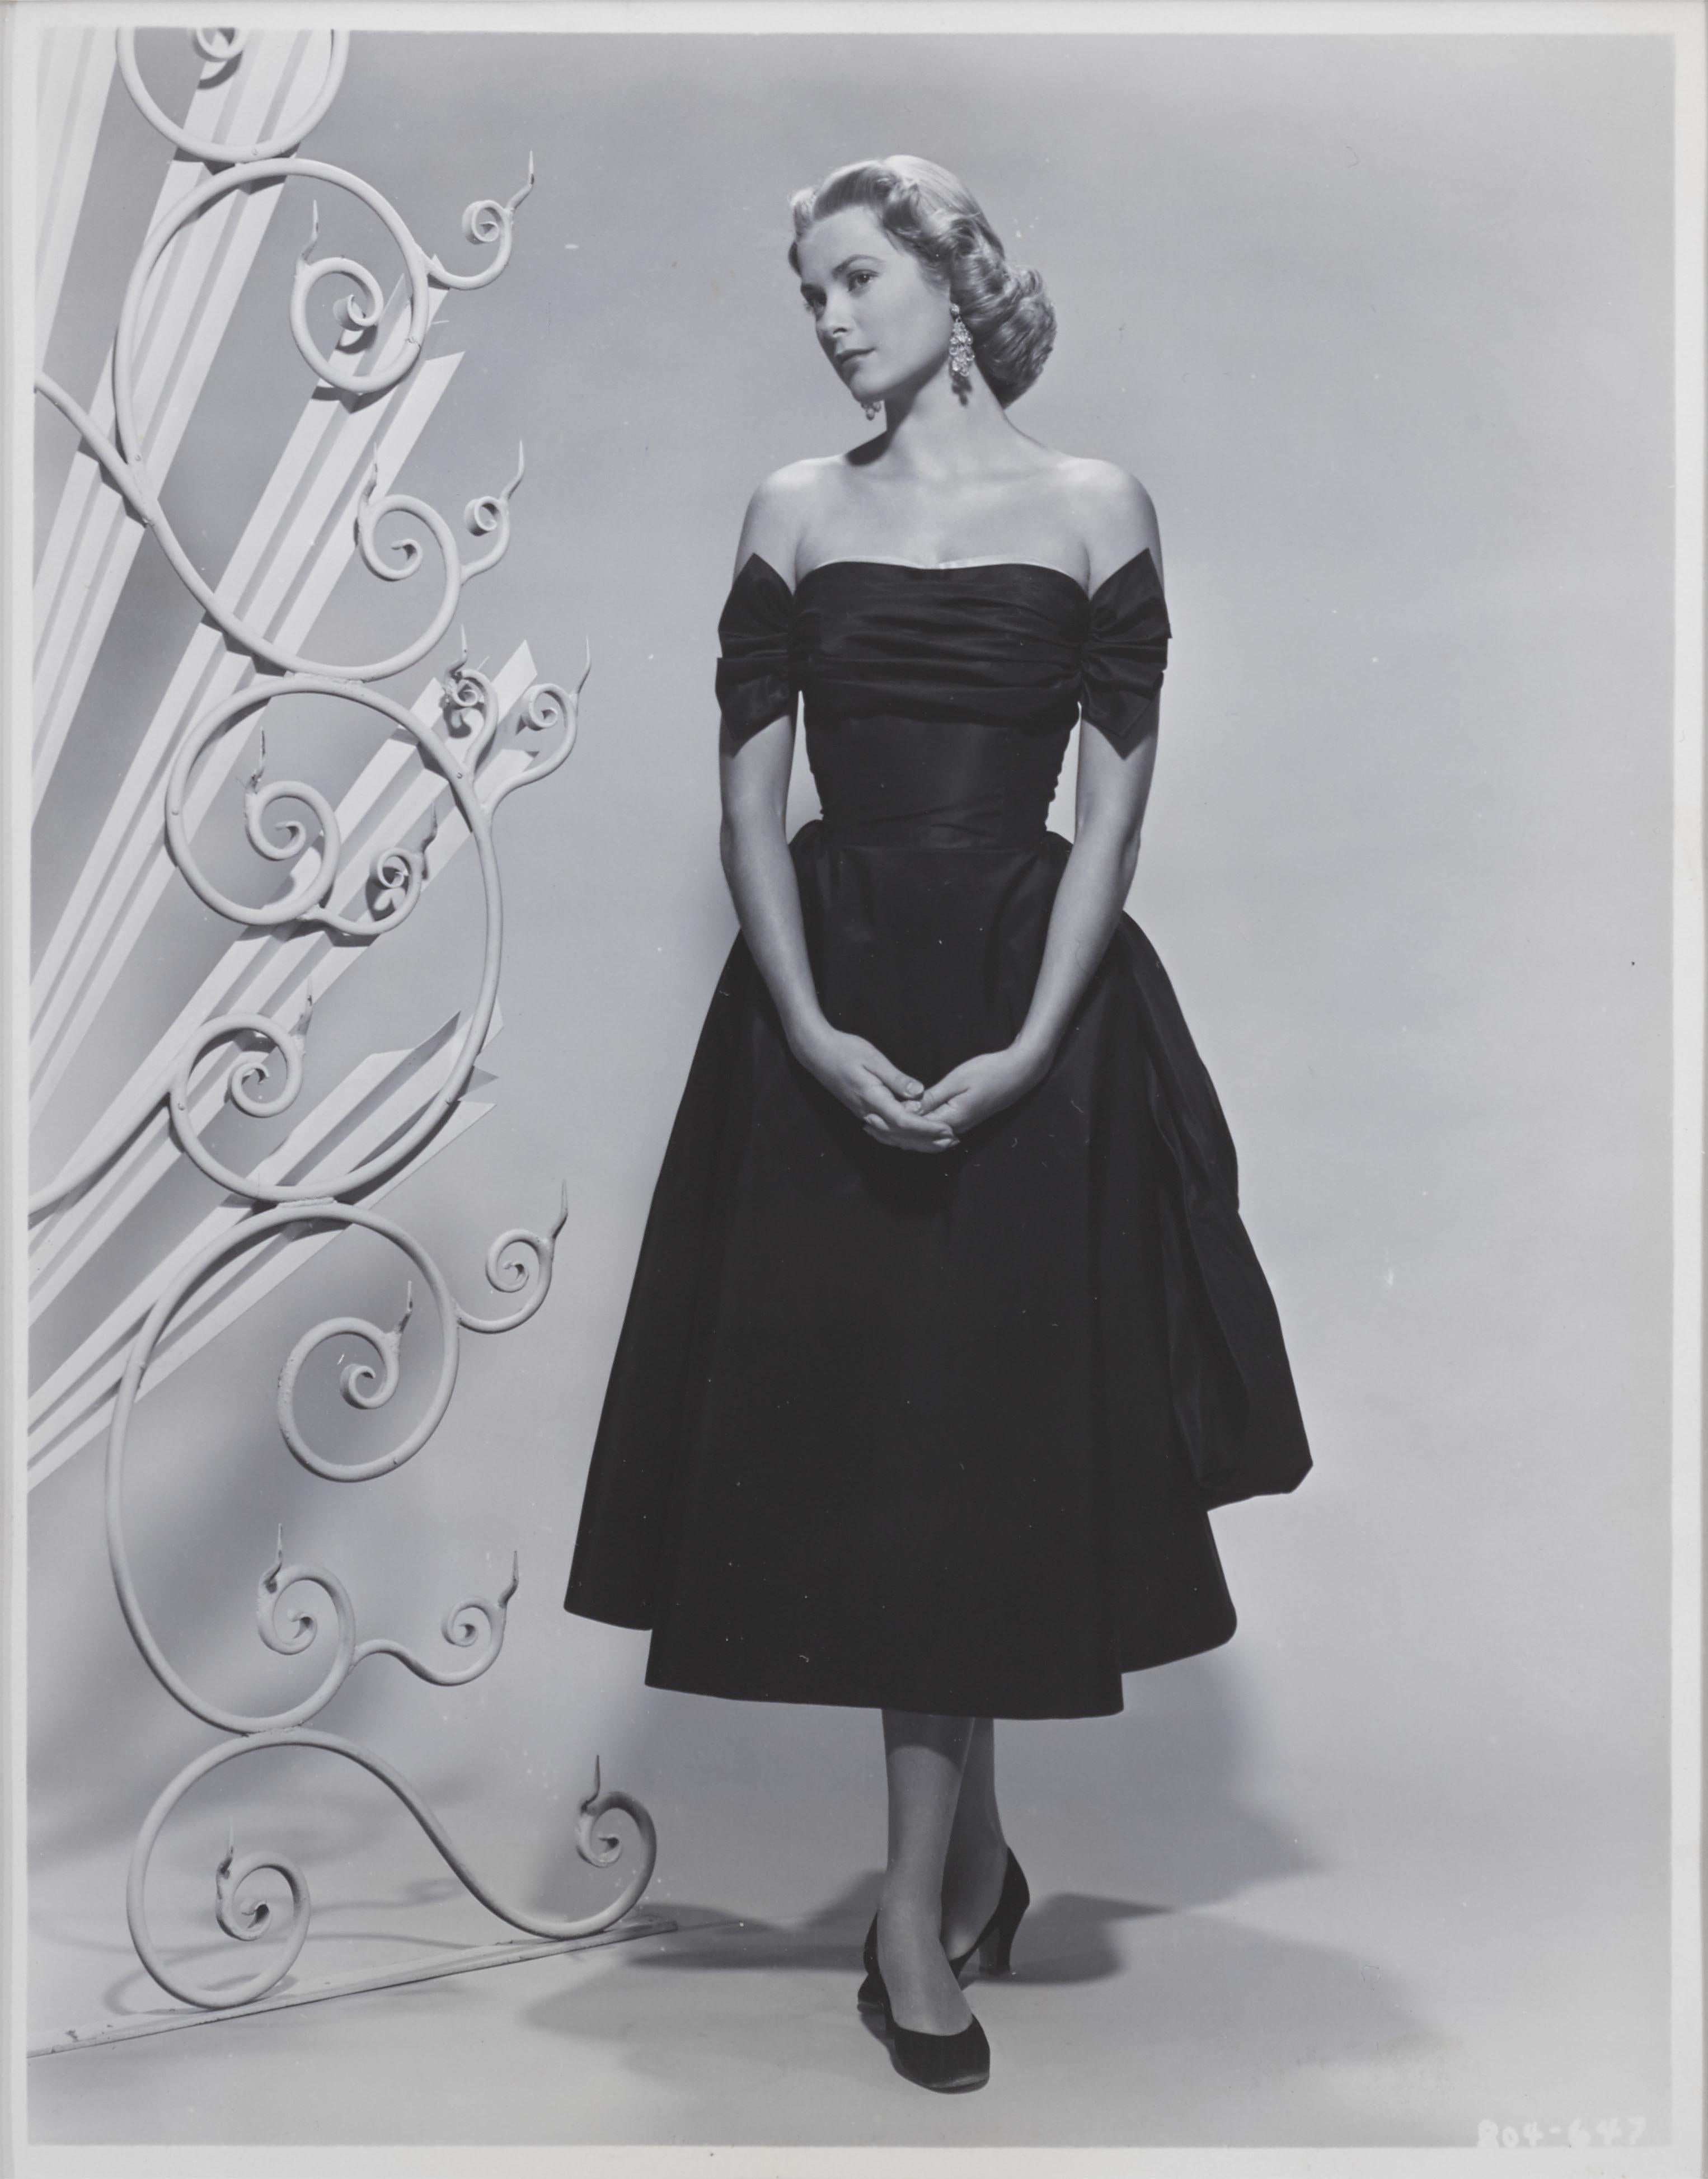 Original Grace Kelly Werbefoto aus dem Jahr 1952.
 Dieses Produktionsstandbild ist konservierend gerahmt in einem Obeche-Holzrahmen mit säurefreien Passepartouts und UV-Plexiglas. Auf der Rückseite des Rahmens befindet sich ein Plexiglasfenster, auf